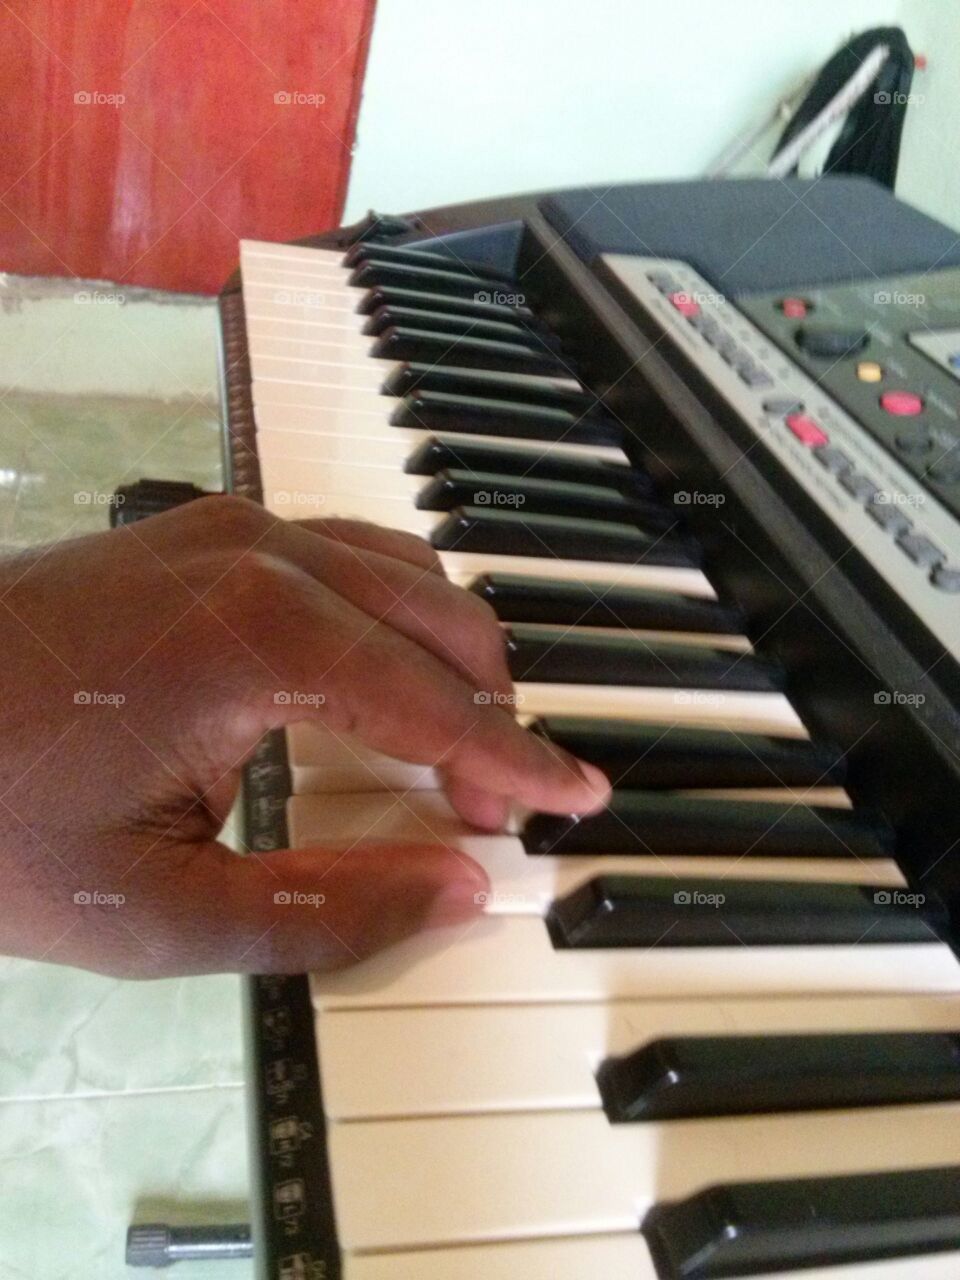 Tocando teclado com a mão esquerda.